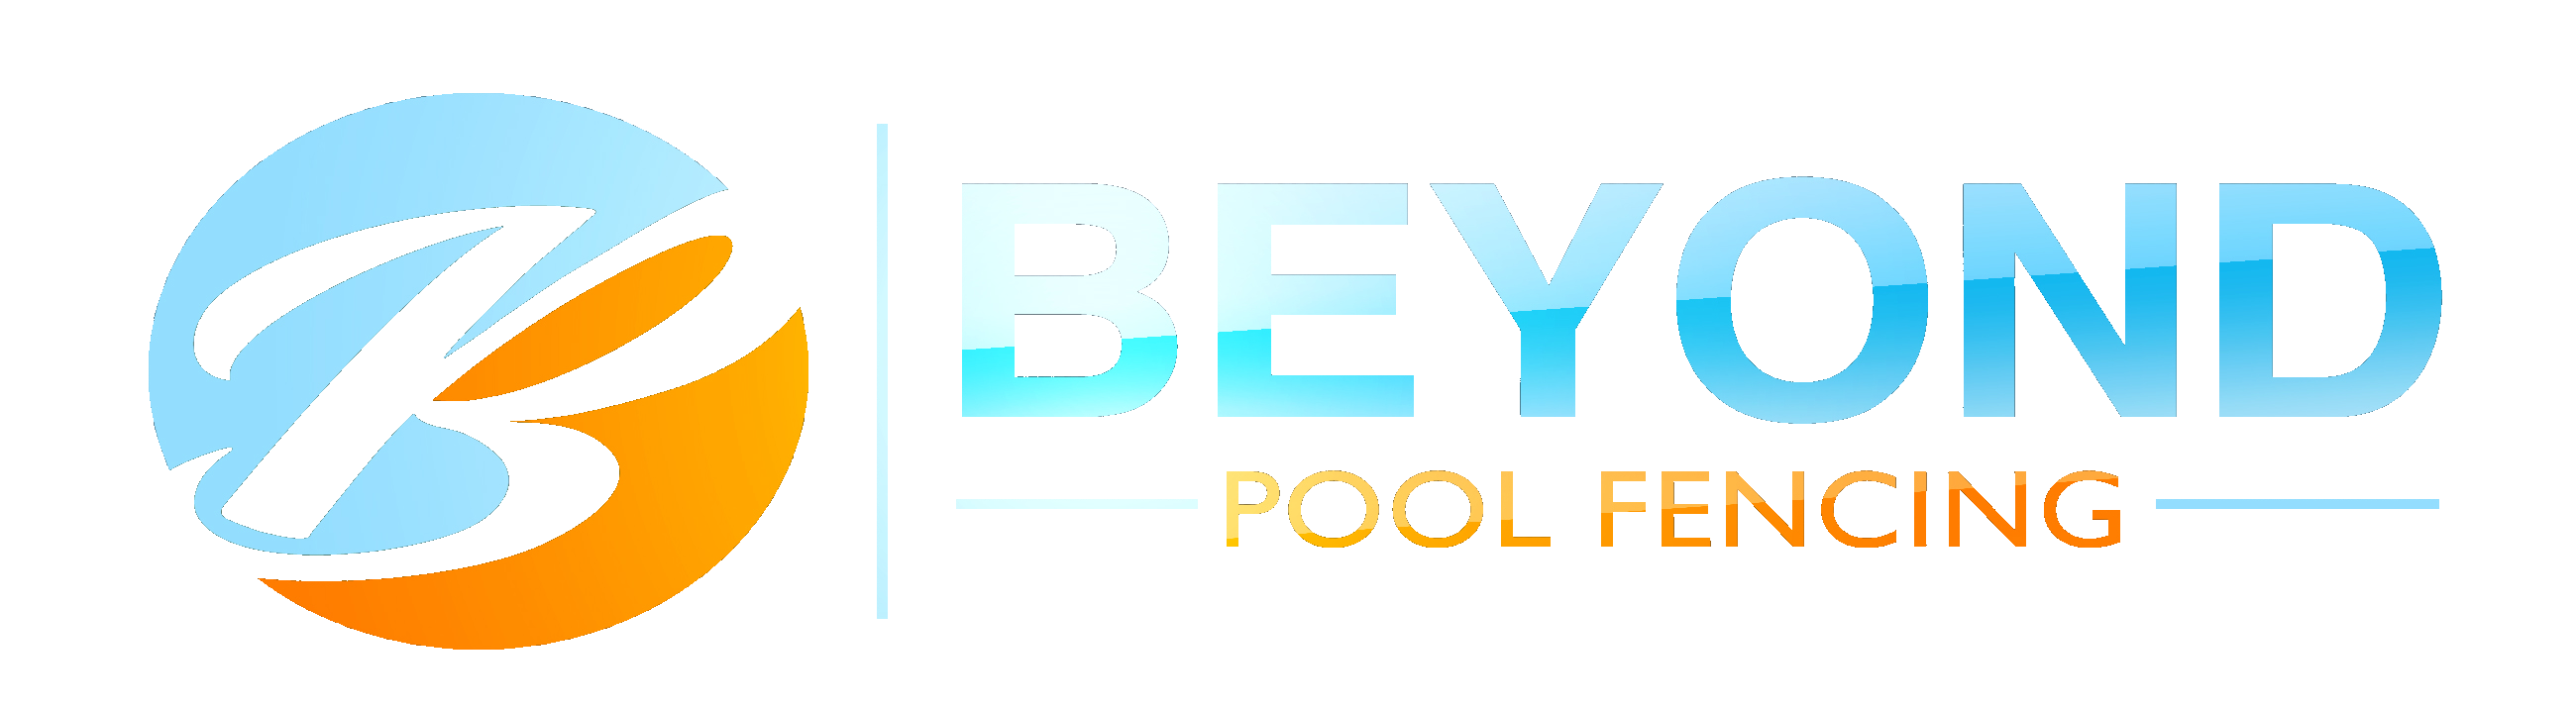 Beyond Pool Fencing